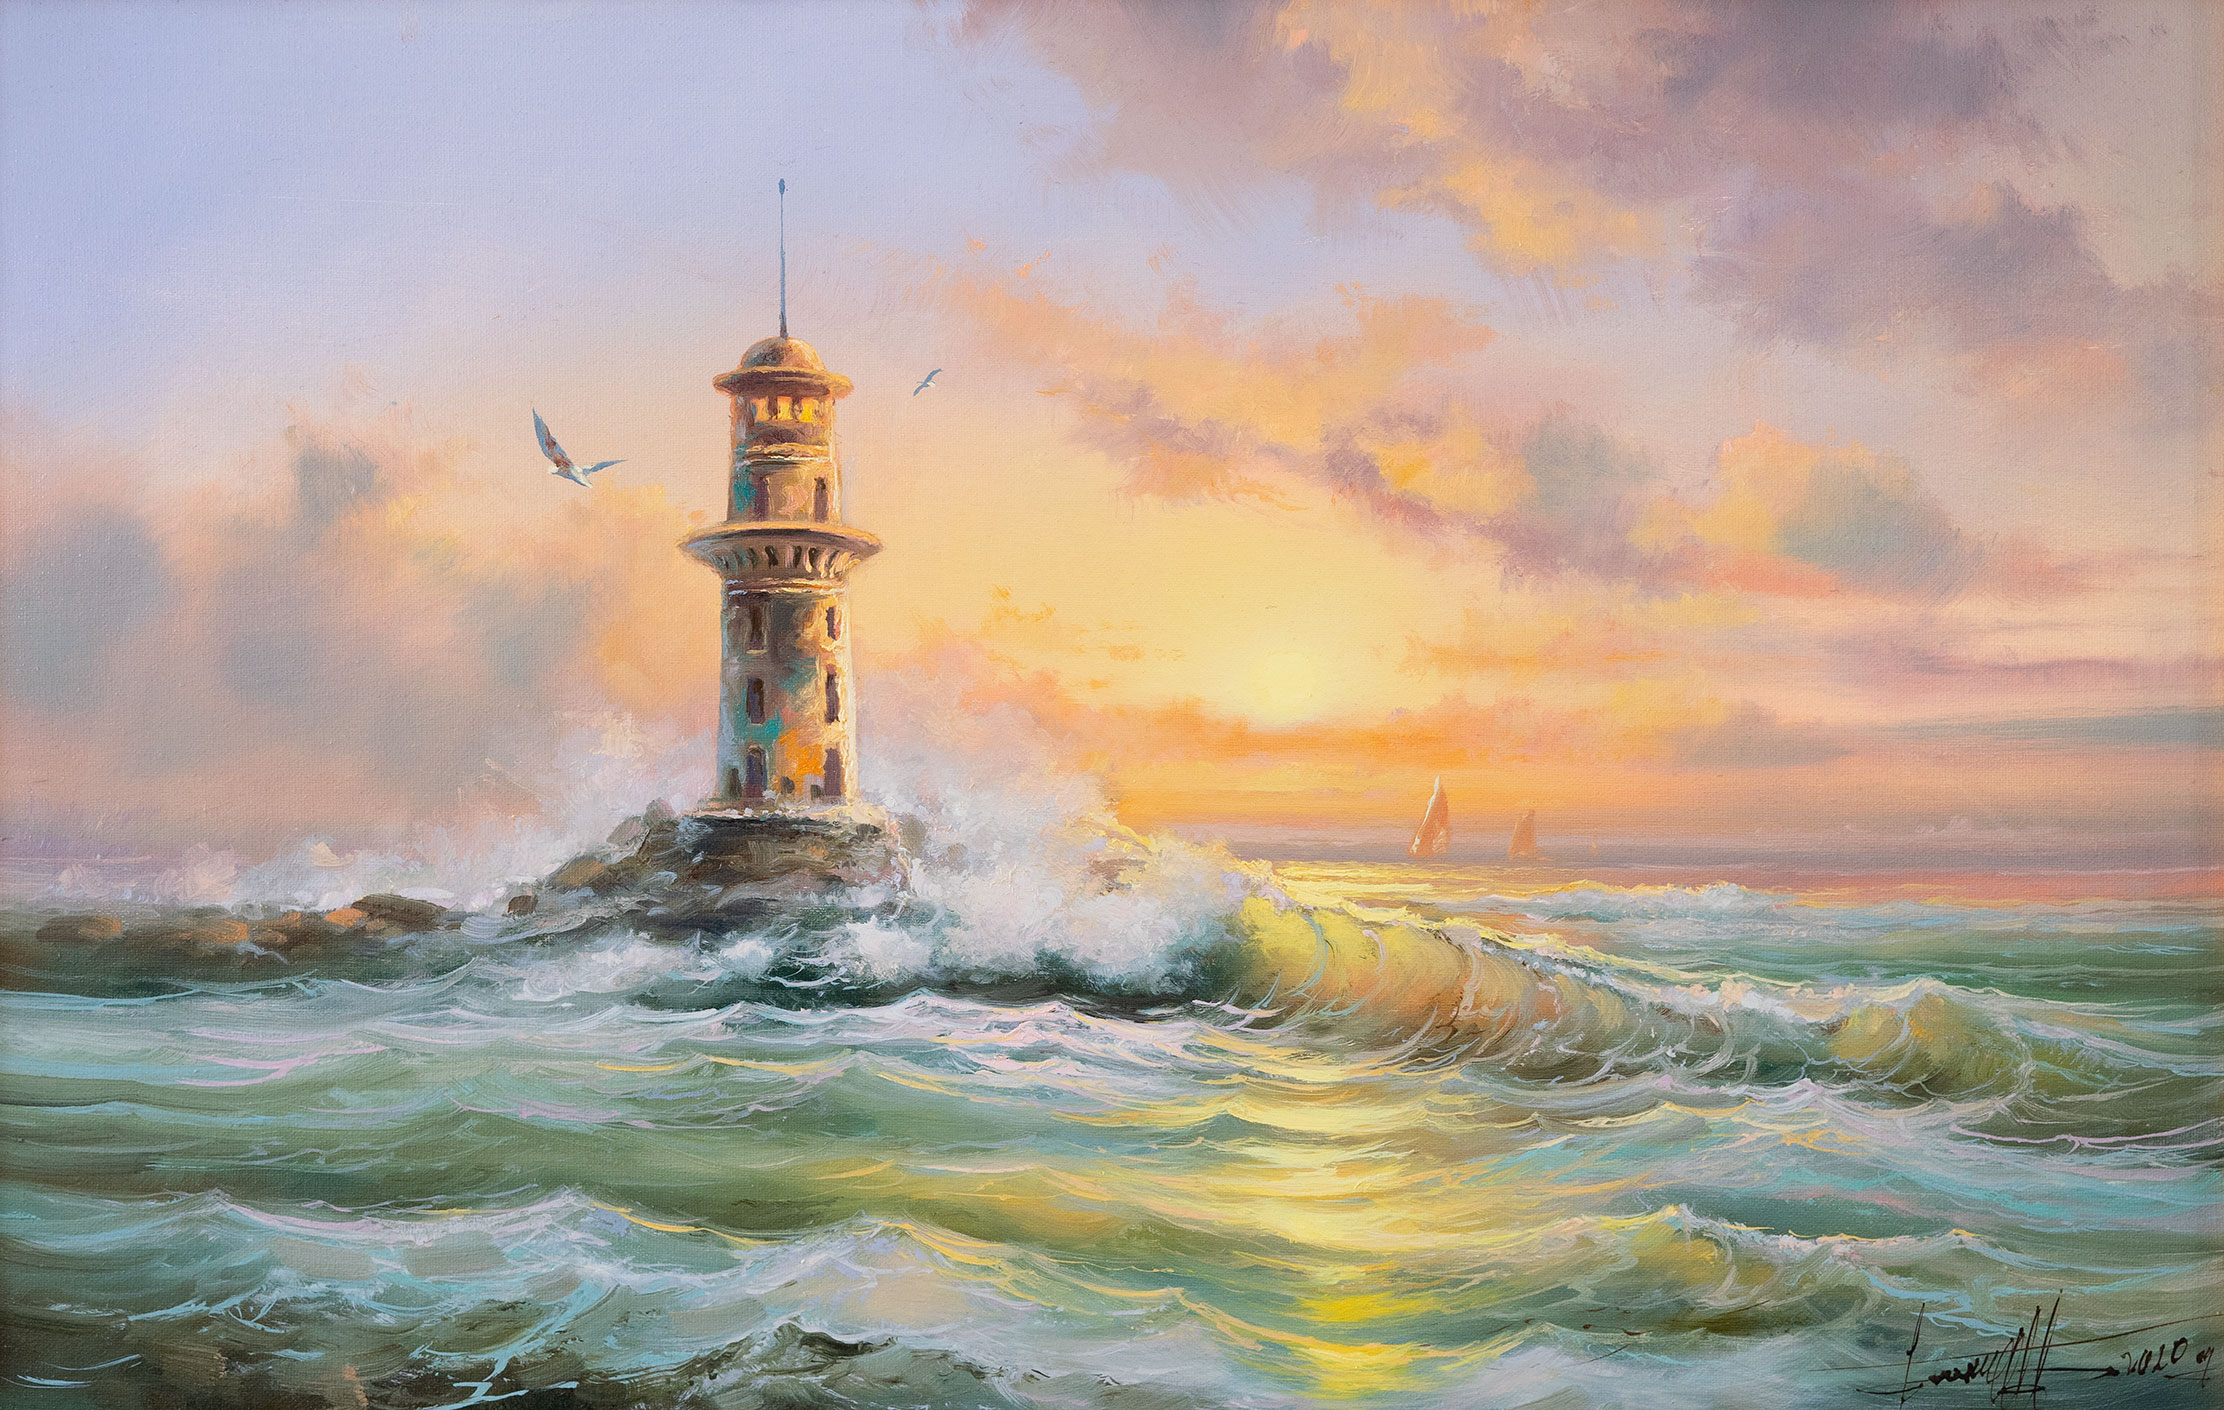 The Lighthouse - 1, Dmitry Balakhonov, Buy the painting Oil